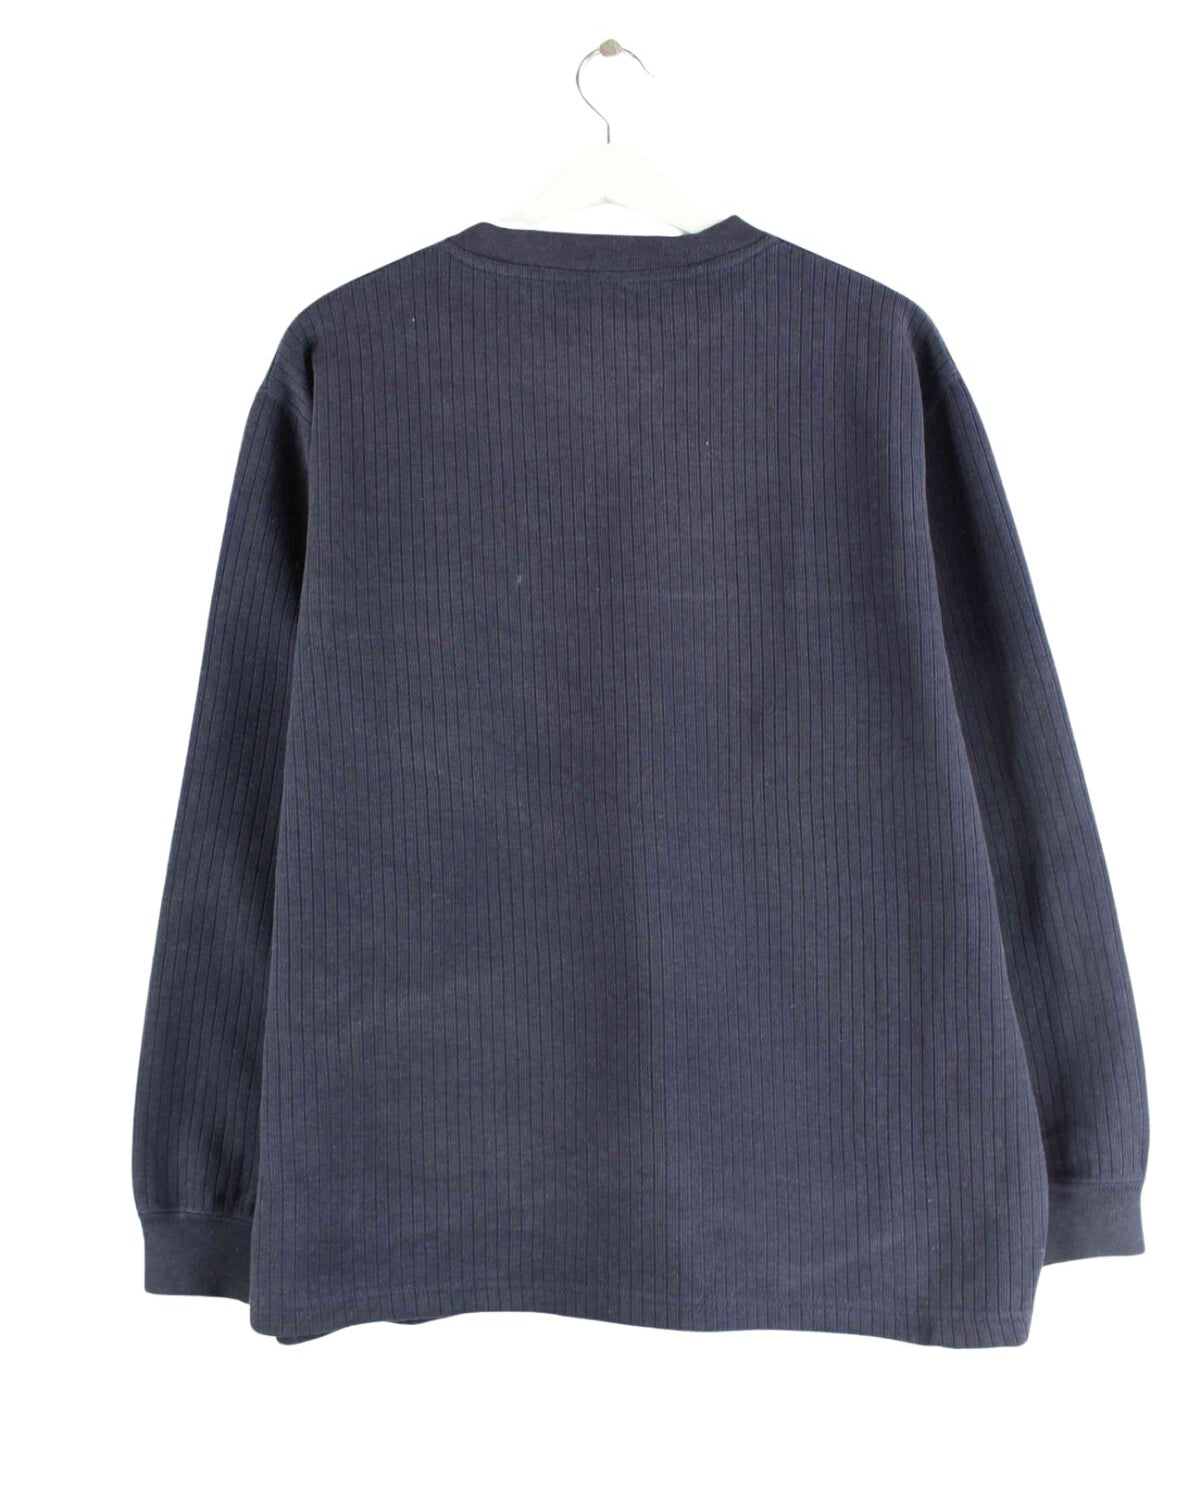 Umbro 90s Vintage Embroidered V-Neck Sweater Blau M (back image)